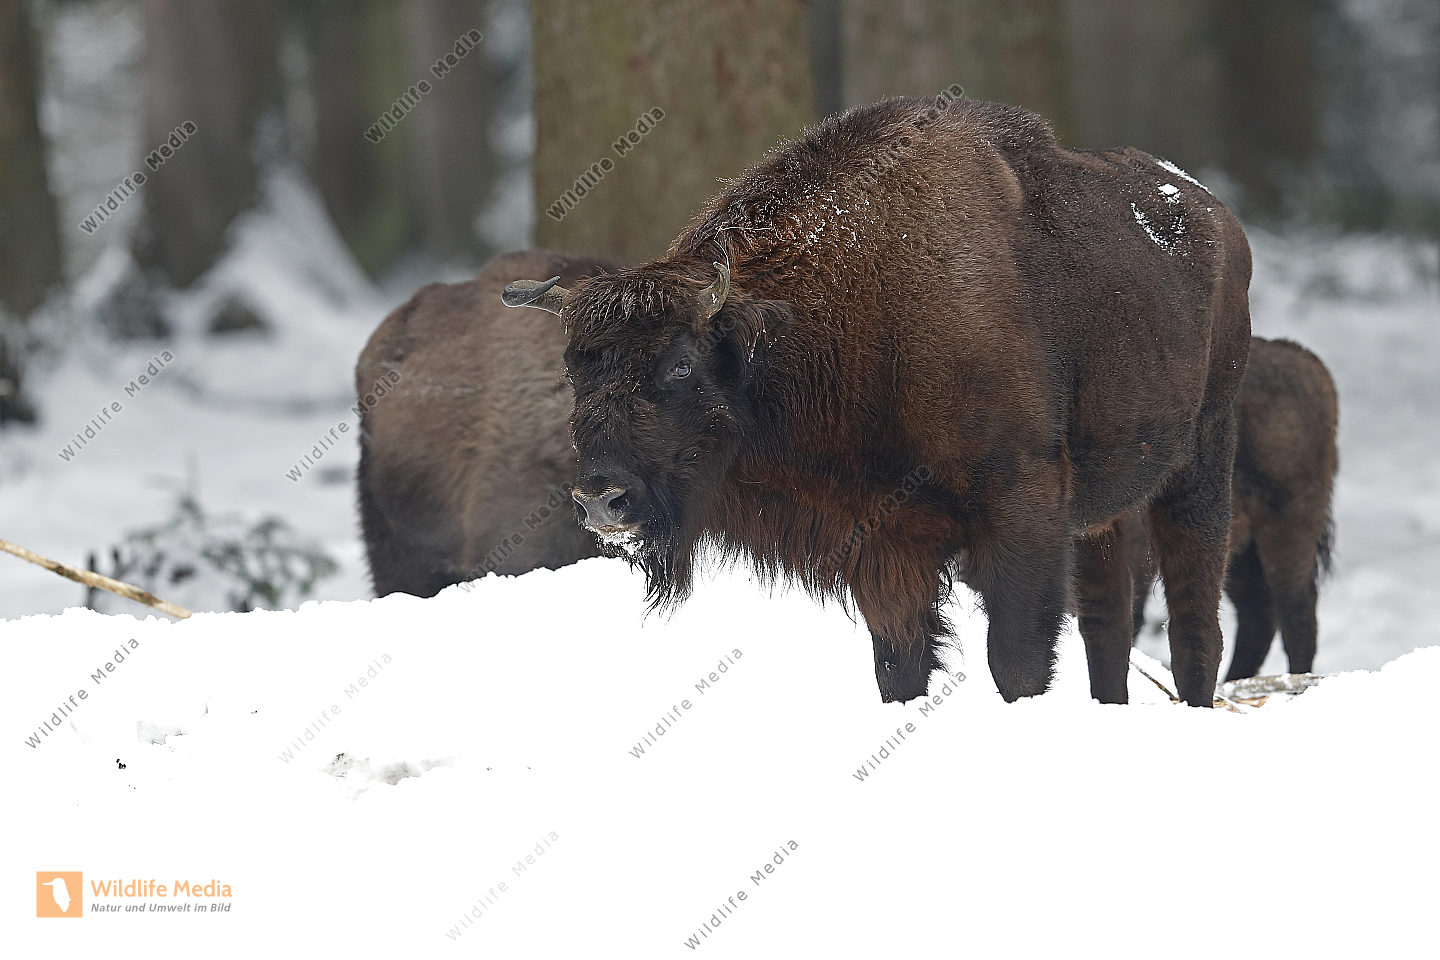 Wisent im Schnee Bild bestellen - Naturbilder bei Wildlife Media